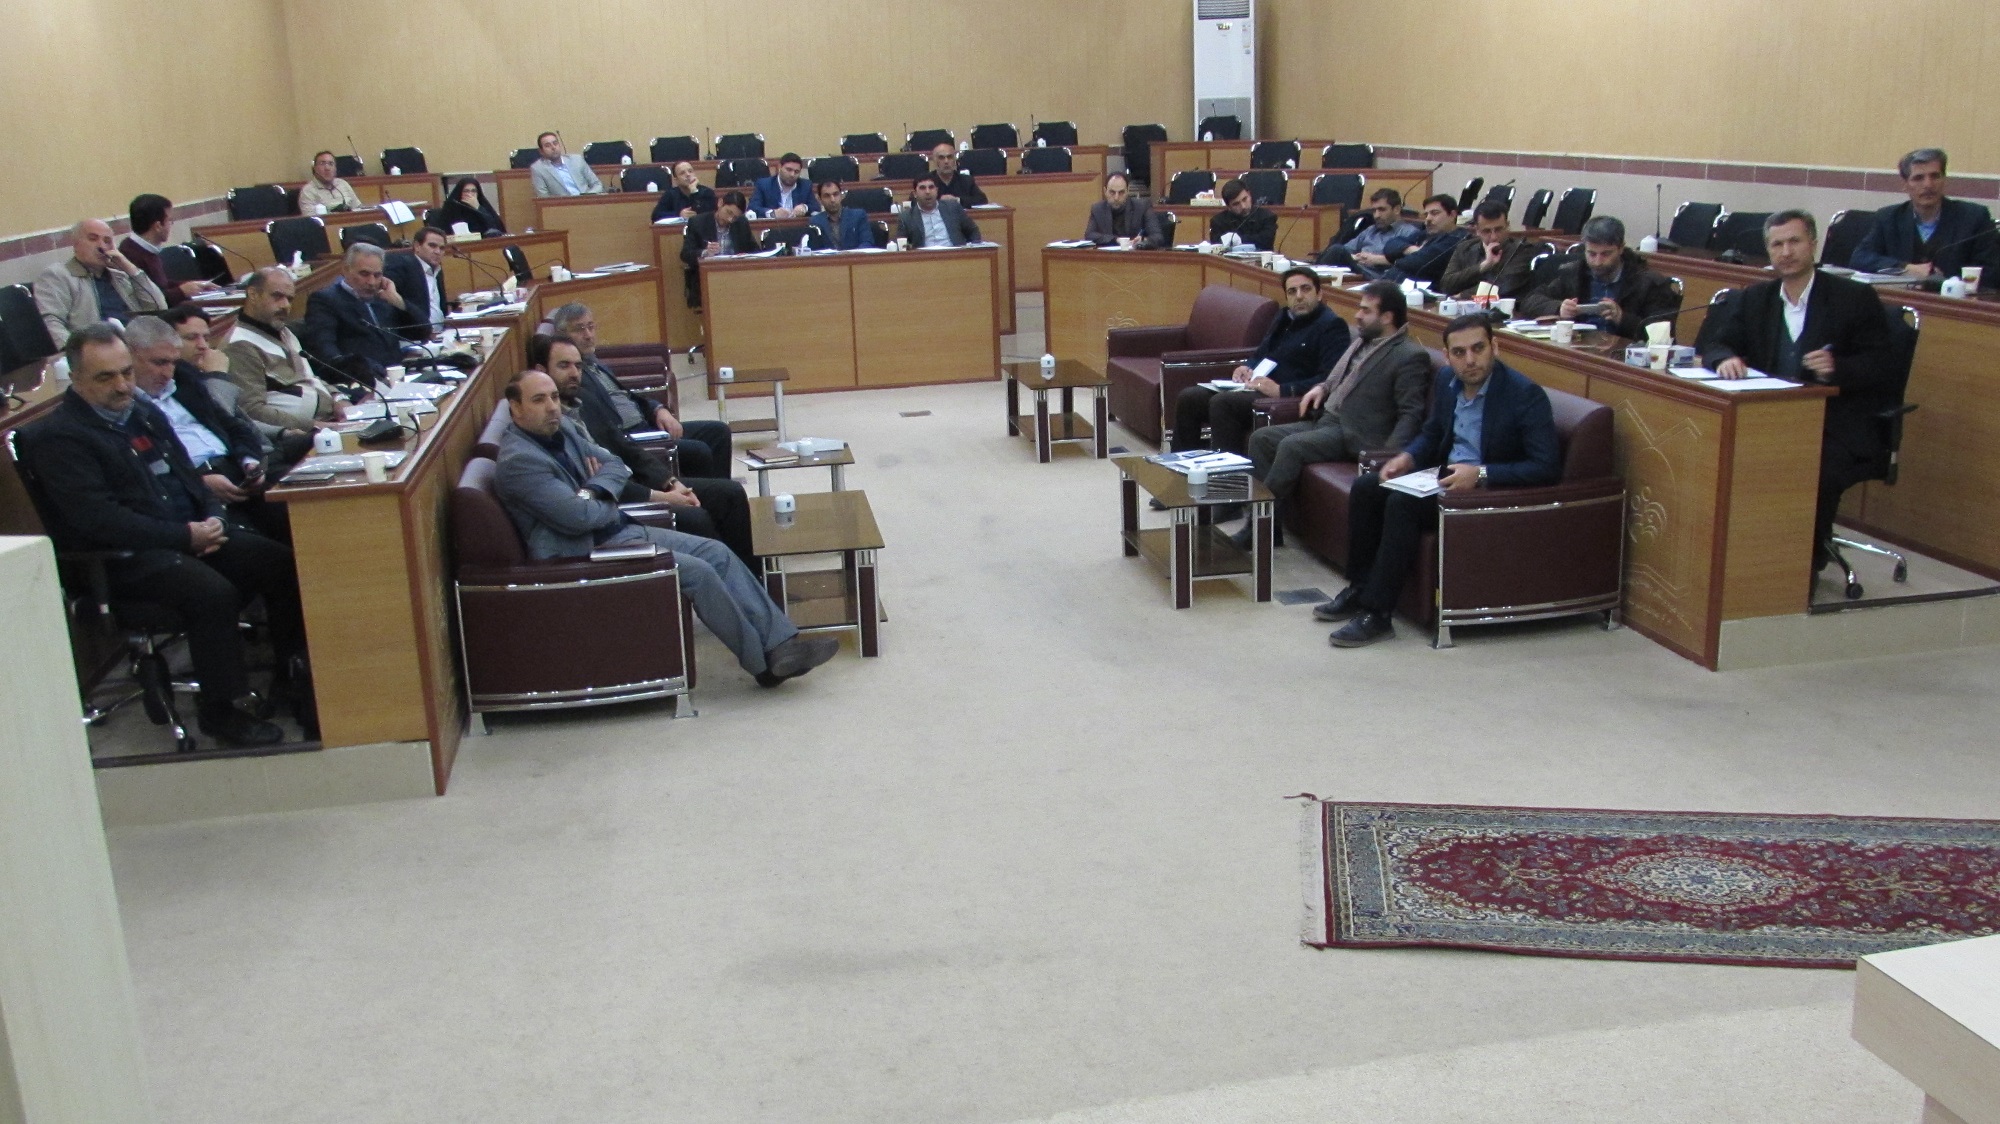 دوره آموزشی دبیران و رابطین پدافند غیر عامل استان آذربایجان شرقی برگزار گردید.